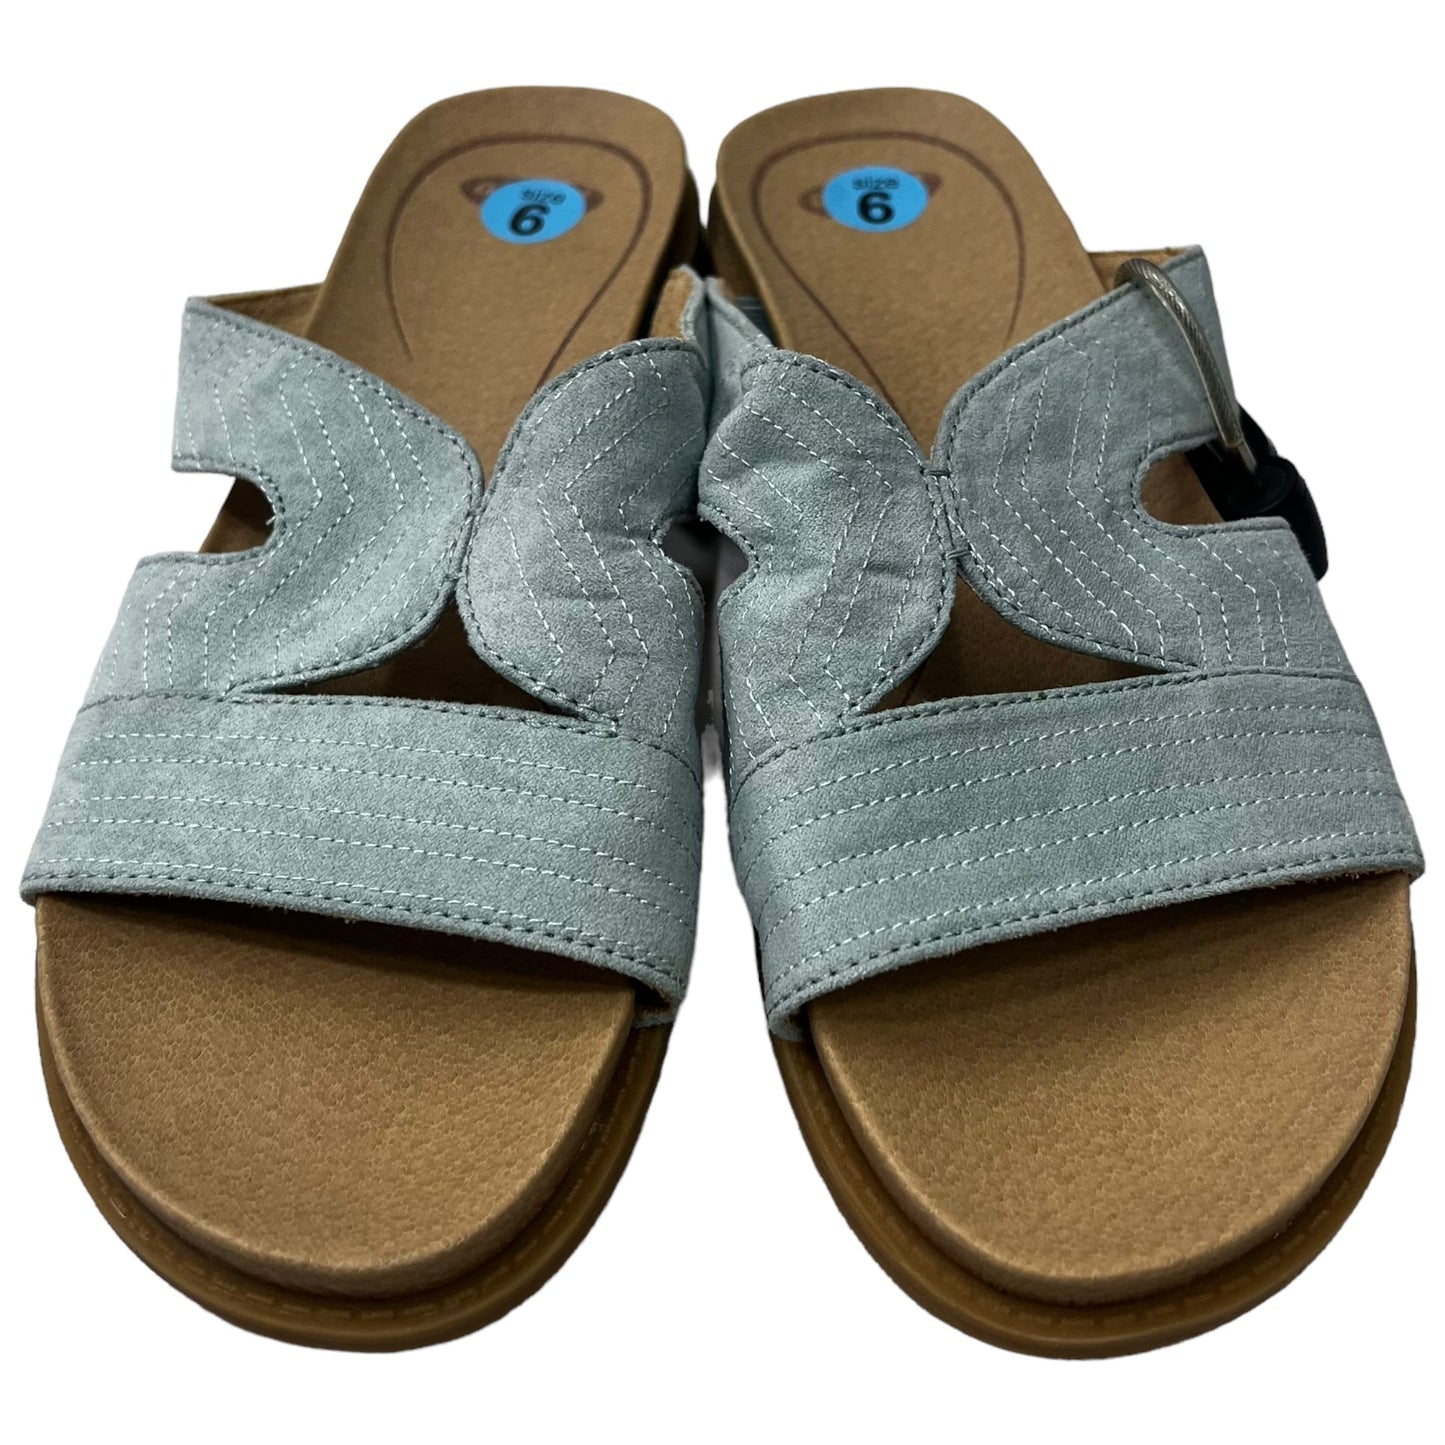 Sandals Flats By Dr Scholls  Size: 6